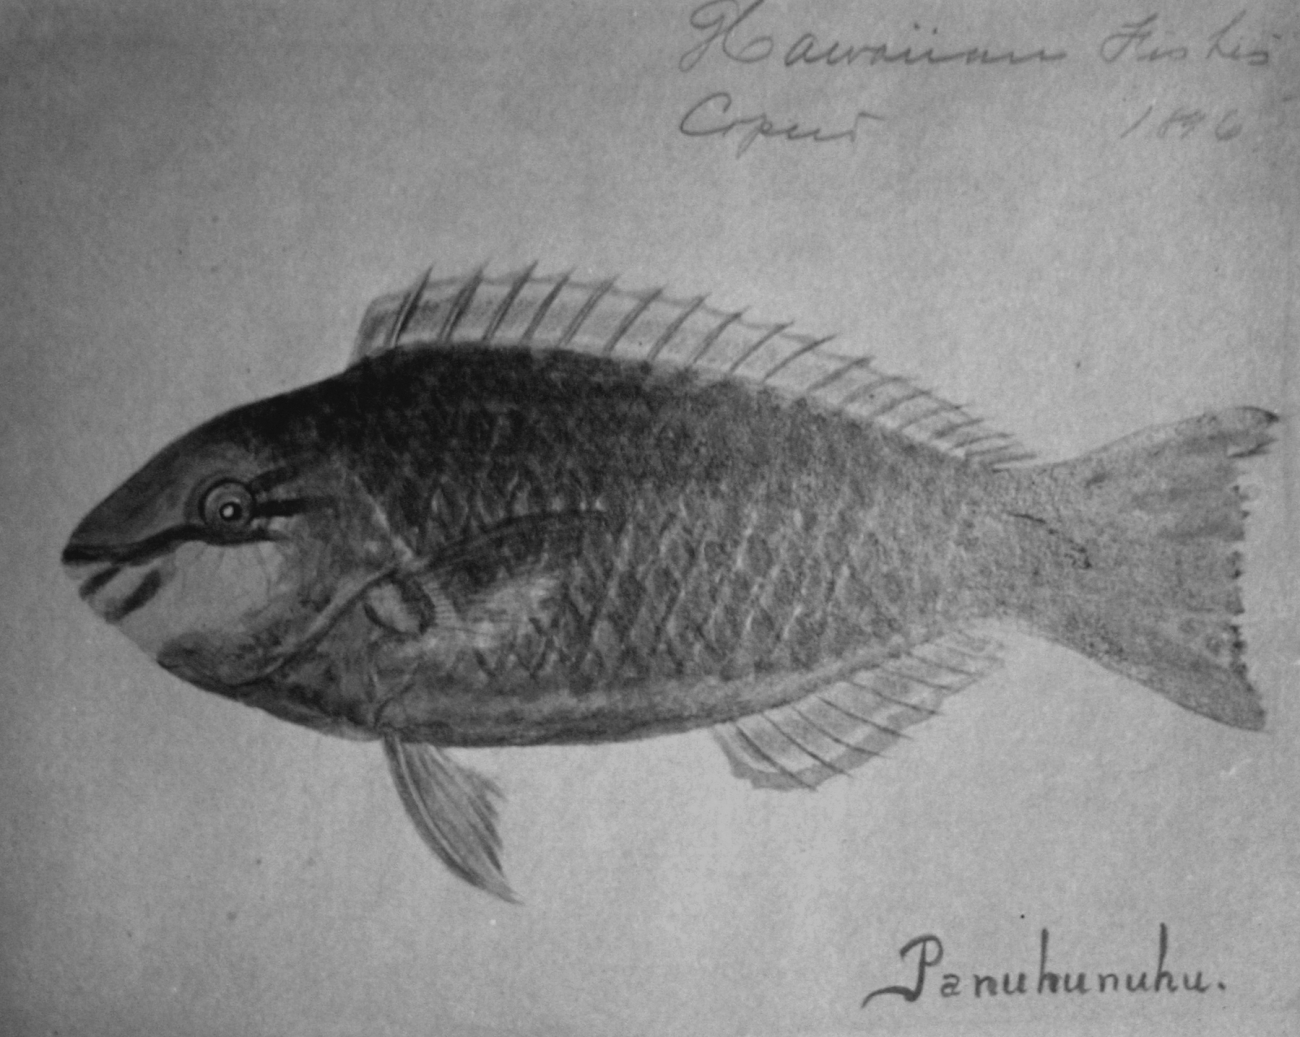 Hawaiian fishes, 1896, Panuhunuhu